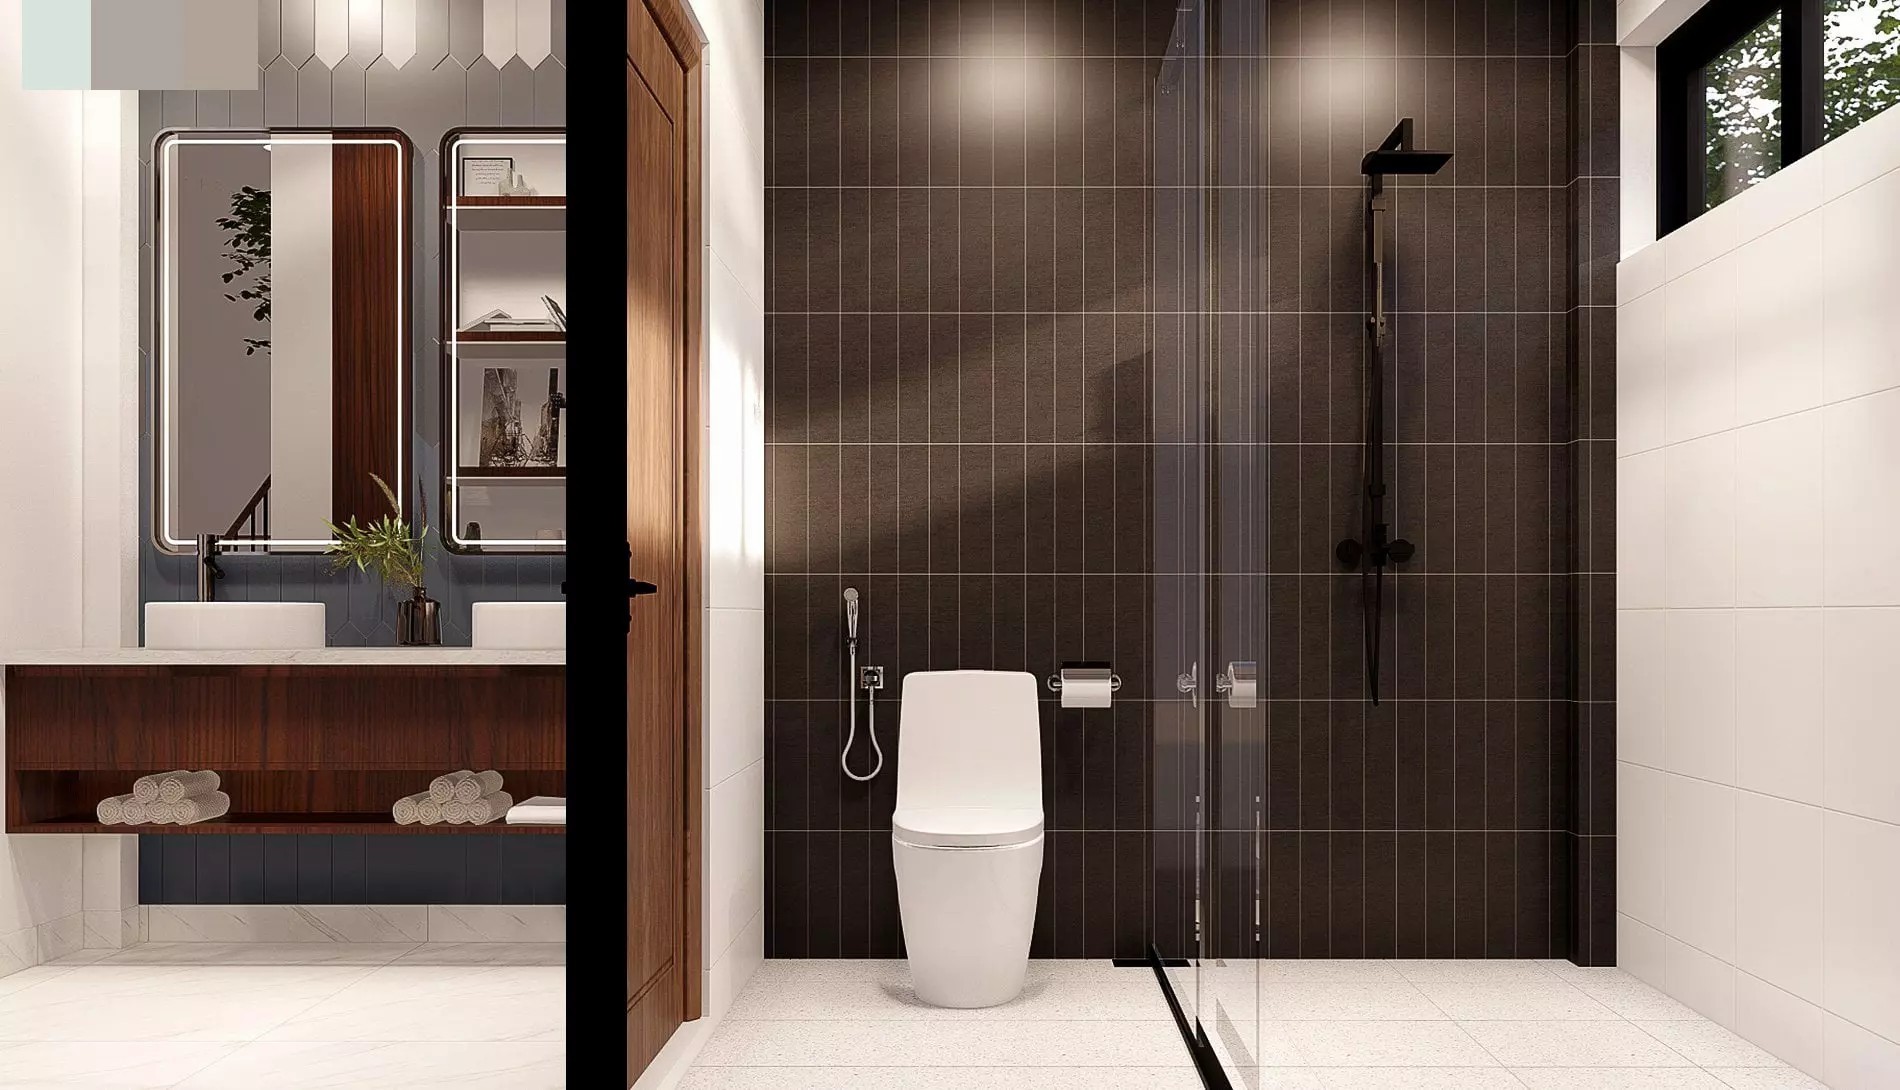 
Các phòng vệ sinh được thiết kế với tông trầm, giúp cho việc dọn, rửa thêm dễ dàng hơn
